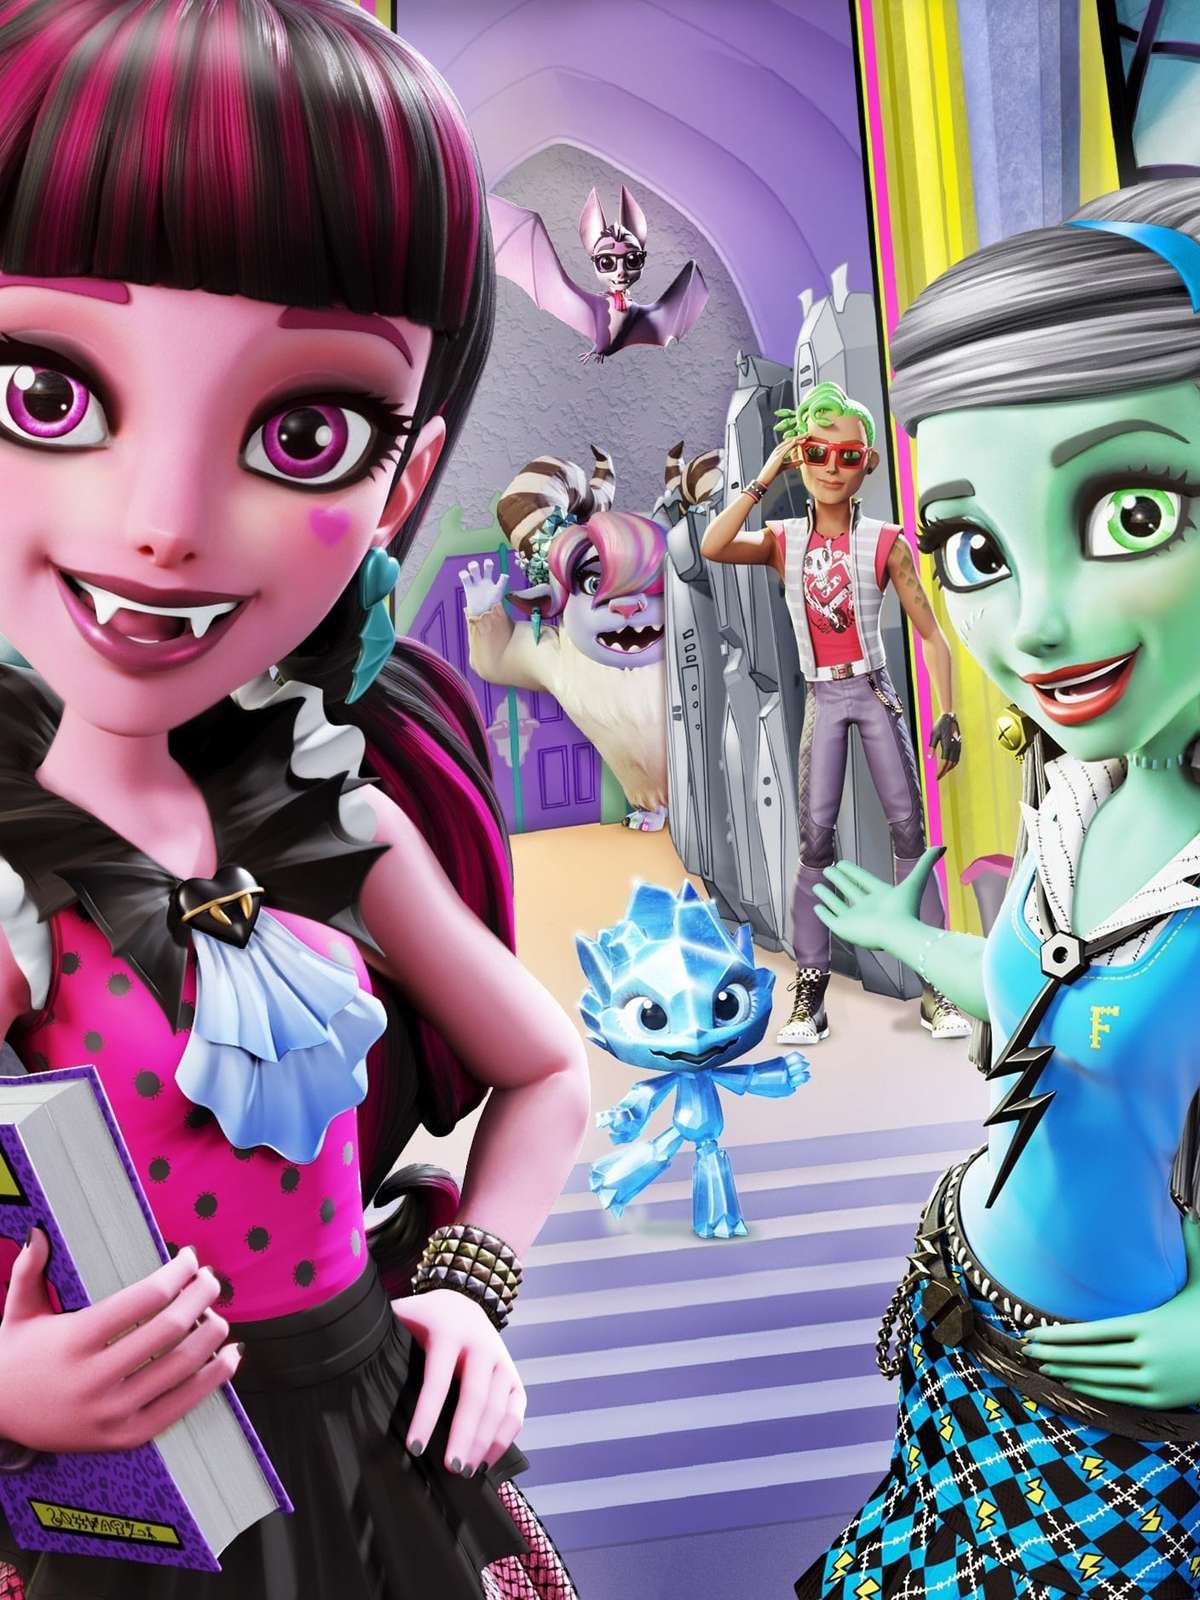 Monster High Boneca Dança Do Monstros Draculaura para crianças a